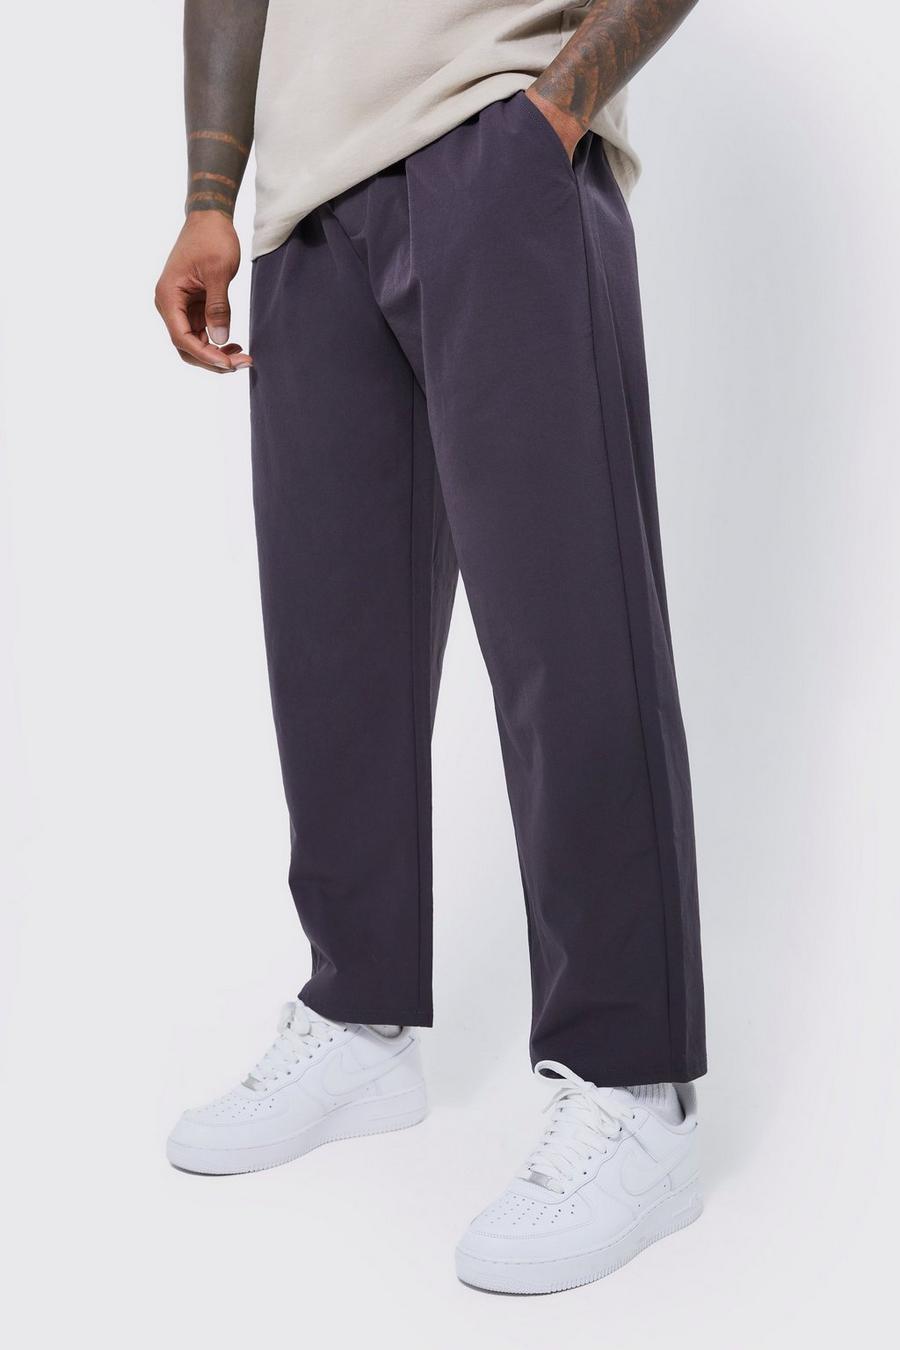 Pantalon court technique léger à taille élastiquée, Charcoal